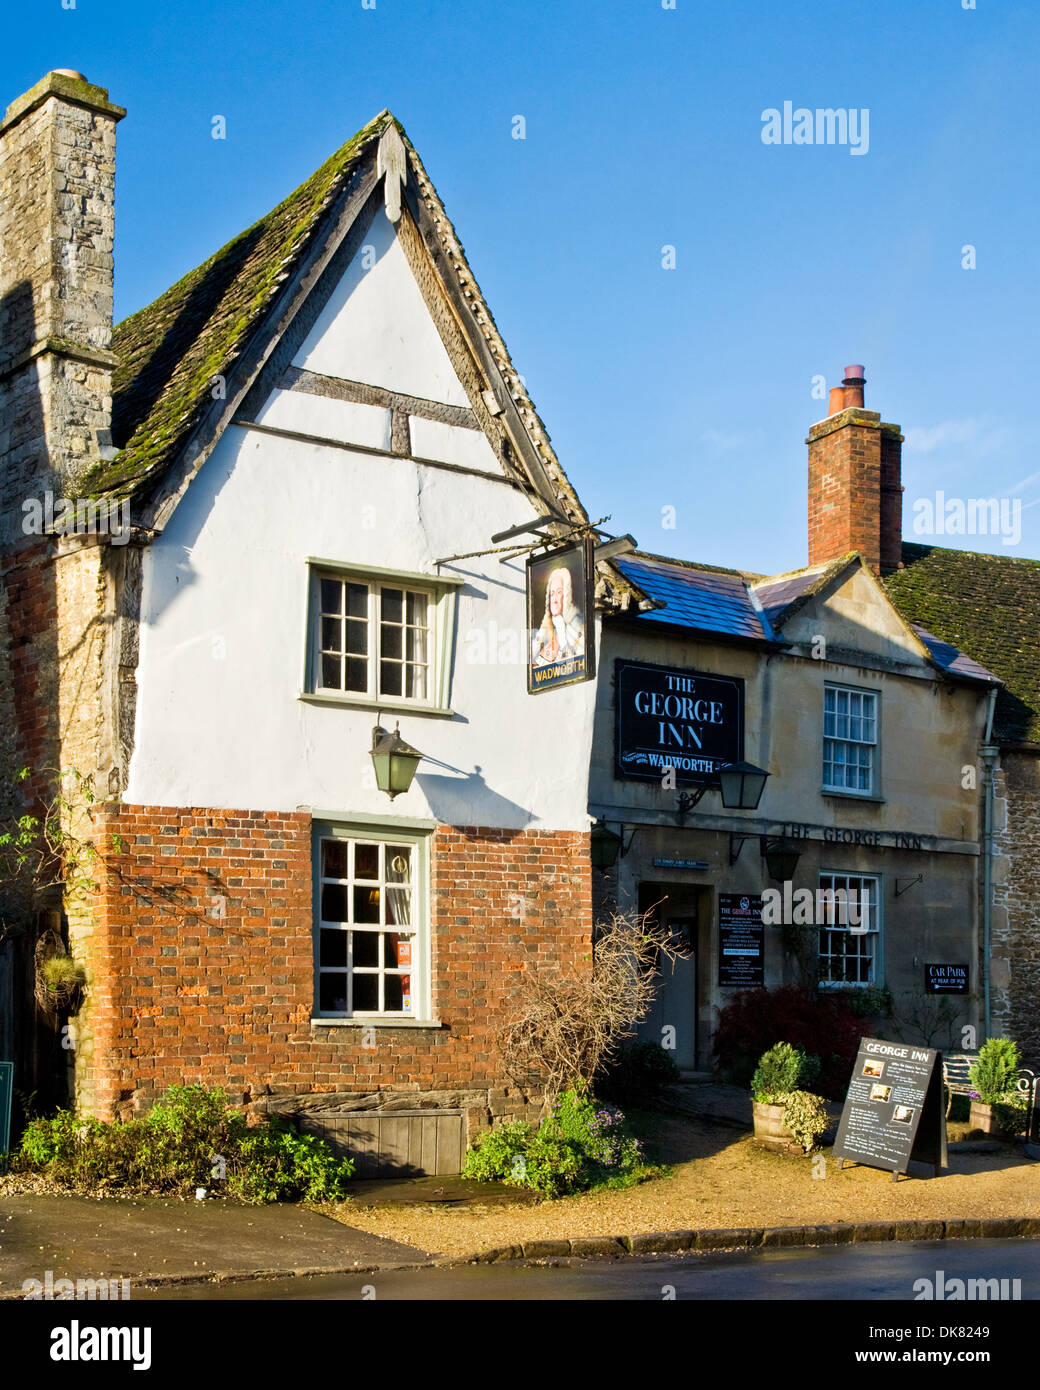 Un vieux pub anglais, le George Inn, dans le pittoresque village de Lacock dans le Wiltshire Banque D'Images